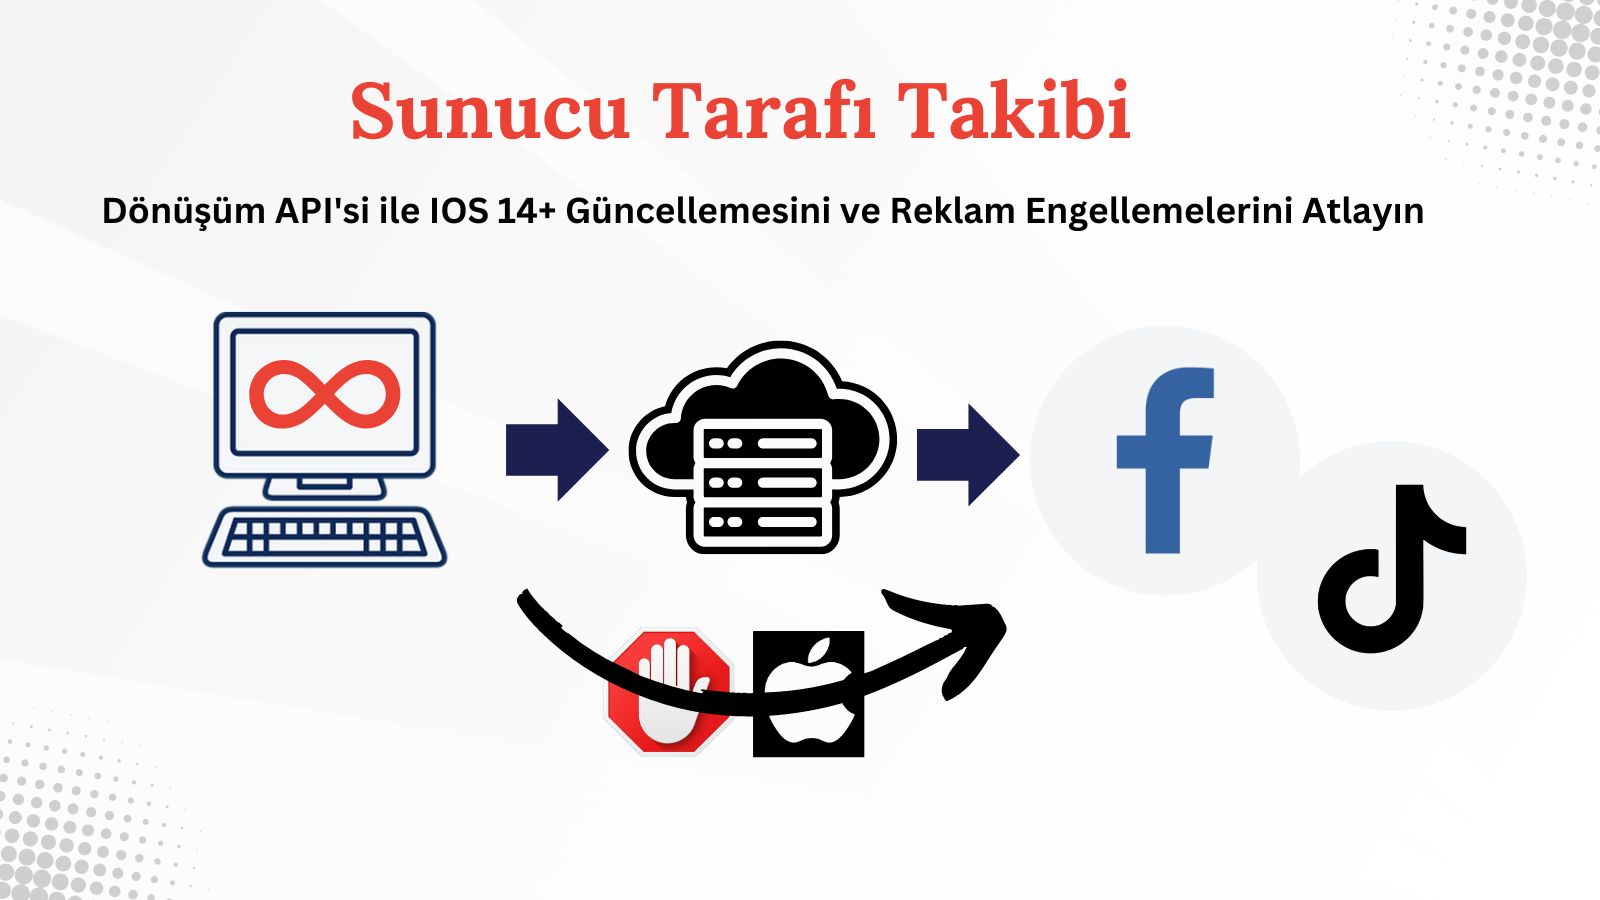 Dönüşüm API'sini kullanarak Sunucu Tarafı Takibi Facebook